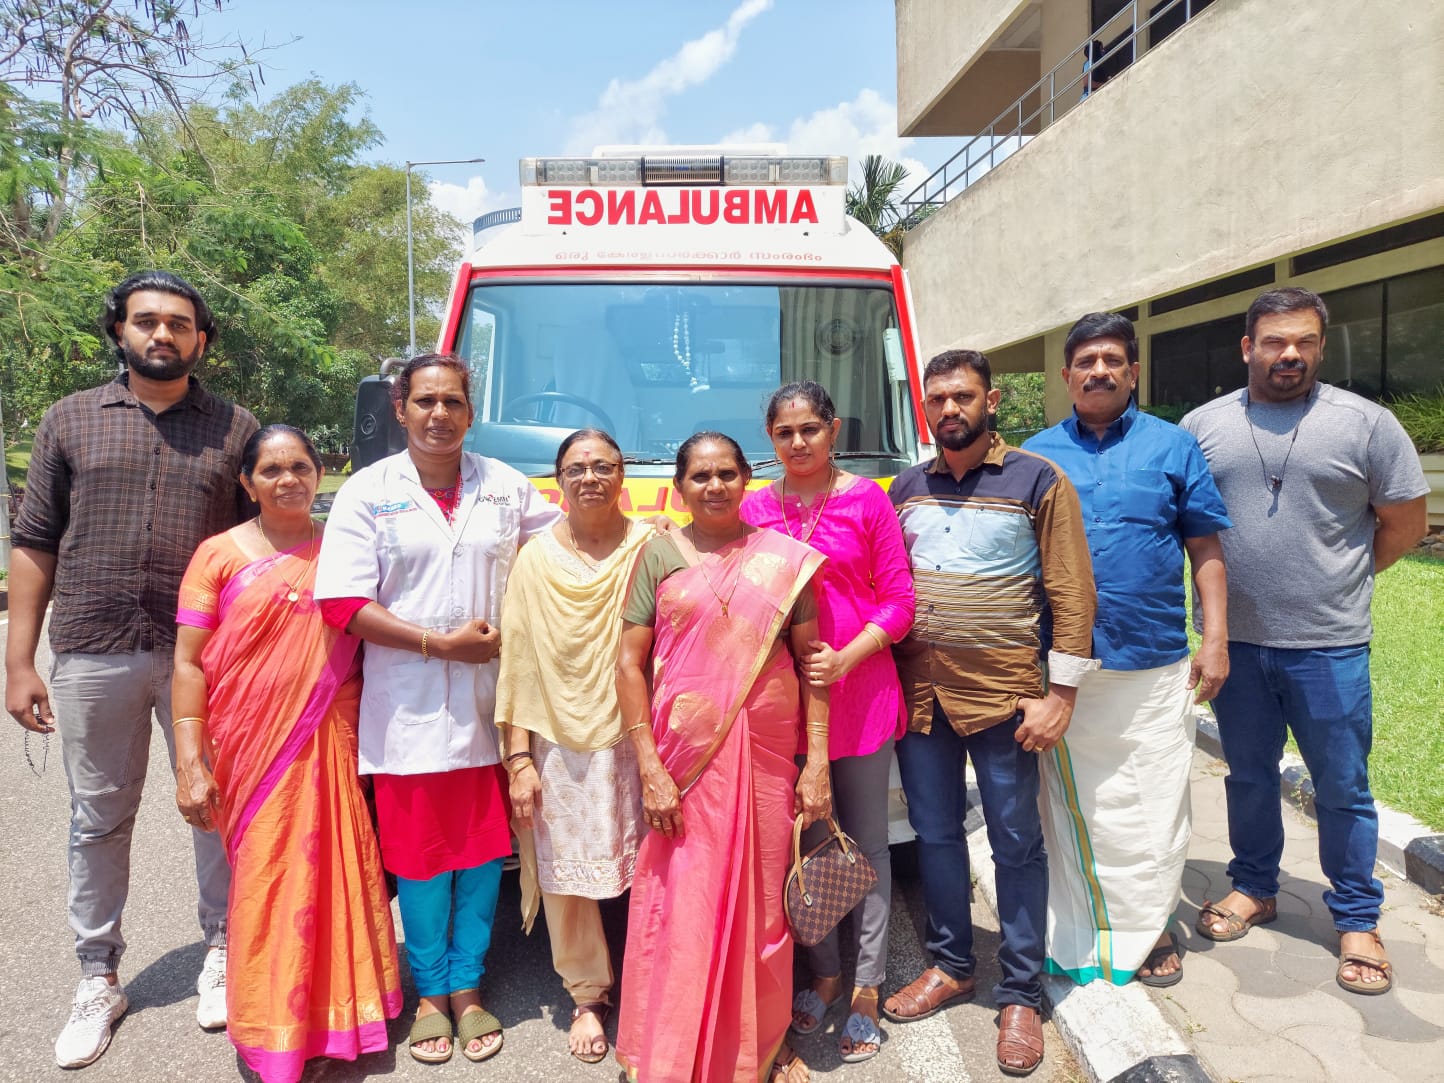 Kottayam Deepa mohan as 108 ambulance driver  Deepa mohan as 108 ambulance driver received key from Health Minister  Deepamol received kaniv 108 ambulance key from veena george  കനിവ് 108 ആംബുലന്‍സ് ഡ്രൈവറായി ദീപമോഹൻ  ആരോഗ്യമന്ത്രി വീണ ജോർജിൽ നിന്ന് താക്കോല്‍ ഏറ്റുവാങ്ങി ദീപ  വനിതാദിനത്തില്‍ ആംബുലന്‍സ് ഡ്രൈവറായി ദീപമോഹൻ  108 ആംബുലന്‍സ് ഡ്രൈവറായി ആദ്യവനിത  കോട്ടയം മേമുറി പാലപ്പറമ്പില്‍ വീട്ടില്‍ ദീപ  first woman deepa mohan became ambulance driver